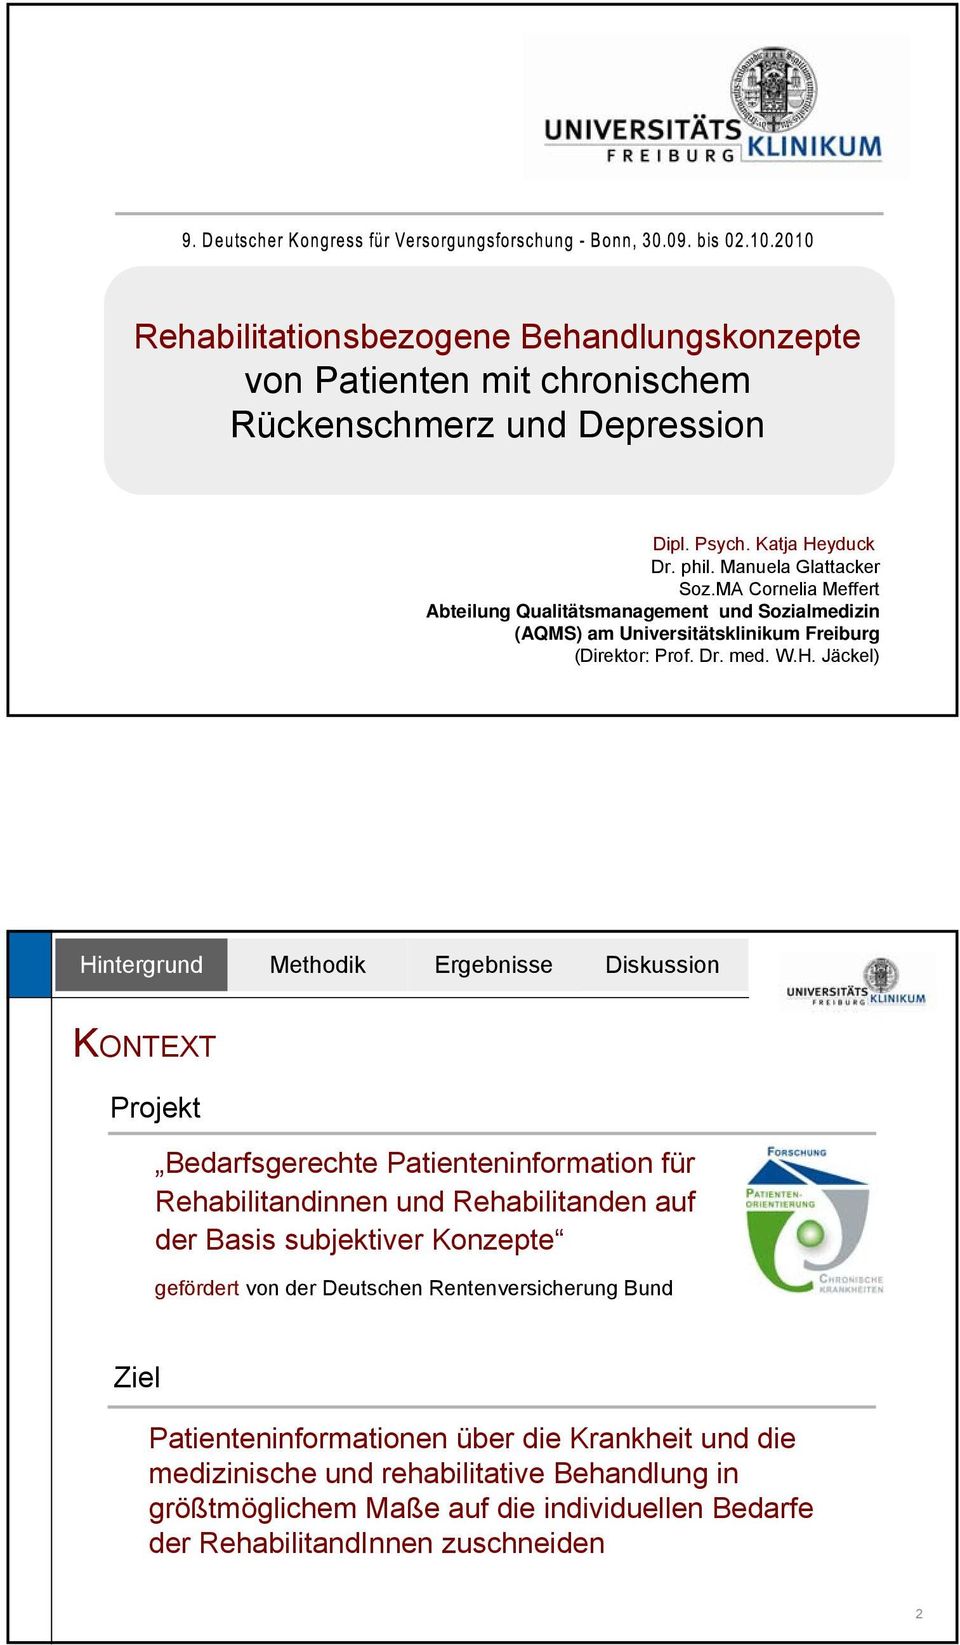 Jäckel) KONTEXT Projekt Bedarfsgerechte Patienteninformation für Rehabilitandinnen und Rehabilitanden auf der Basis subjektiver Konzepte gefördert von der Deutschen